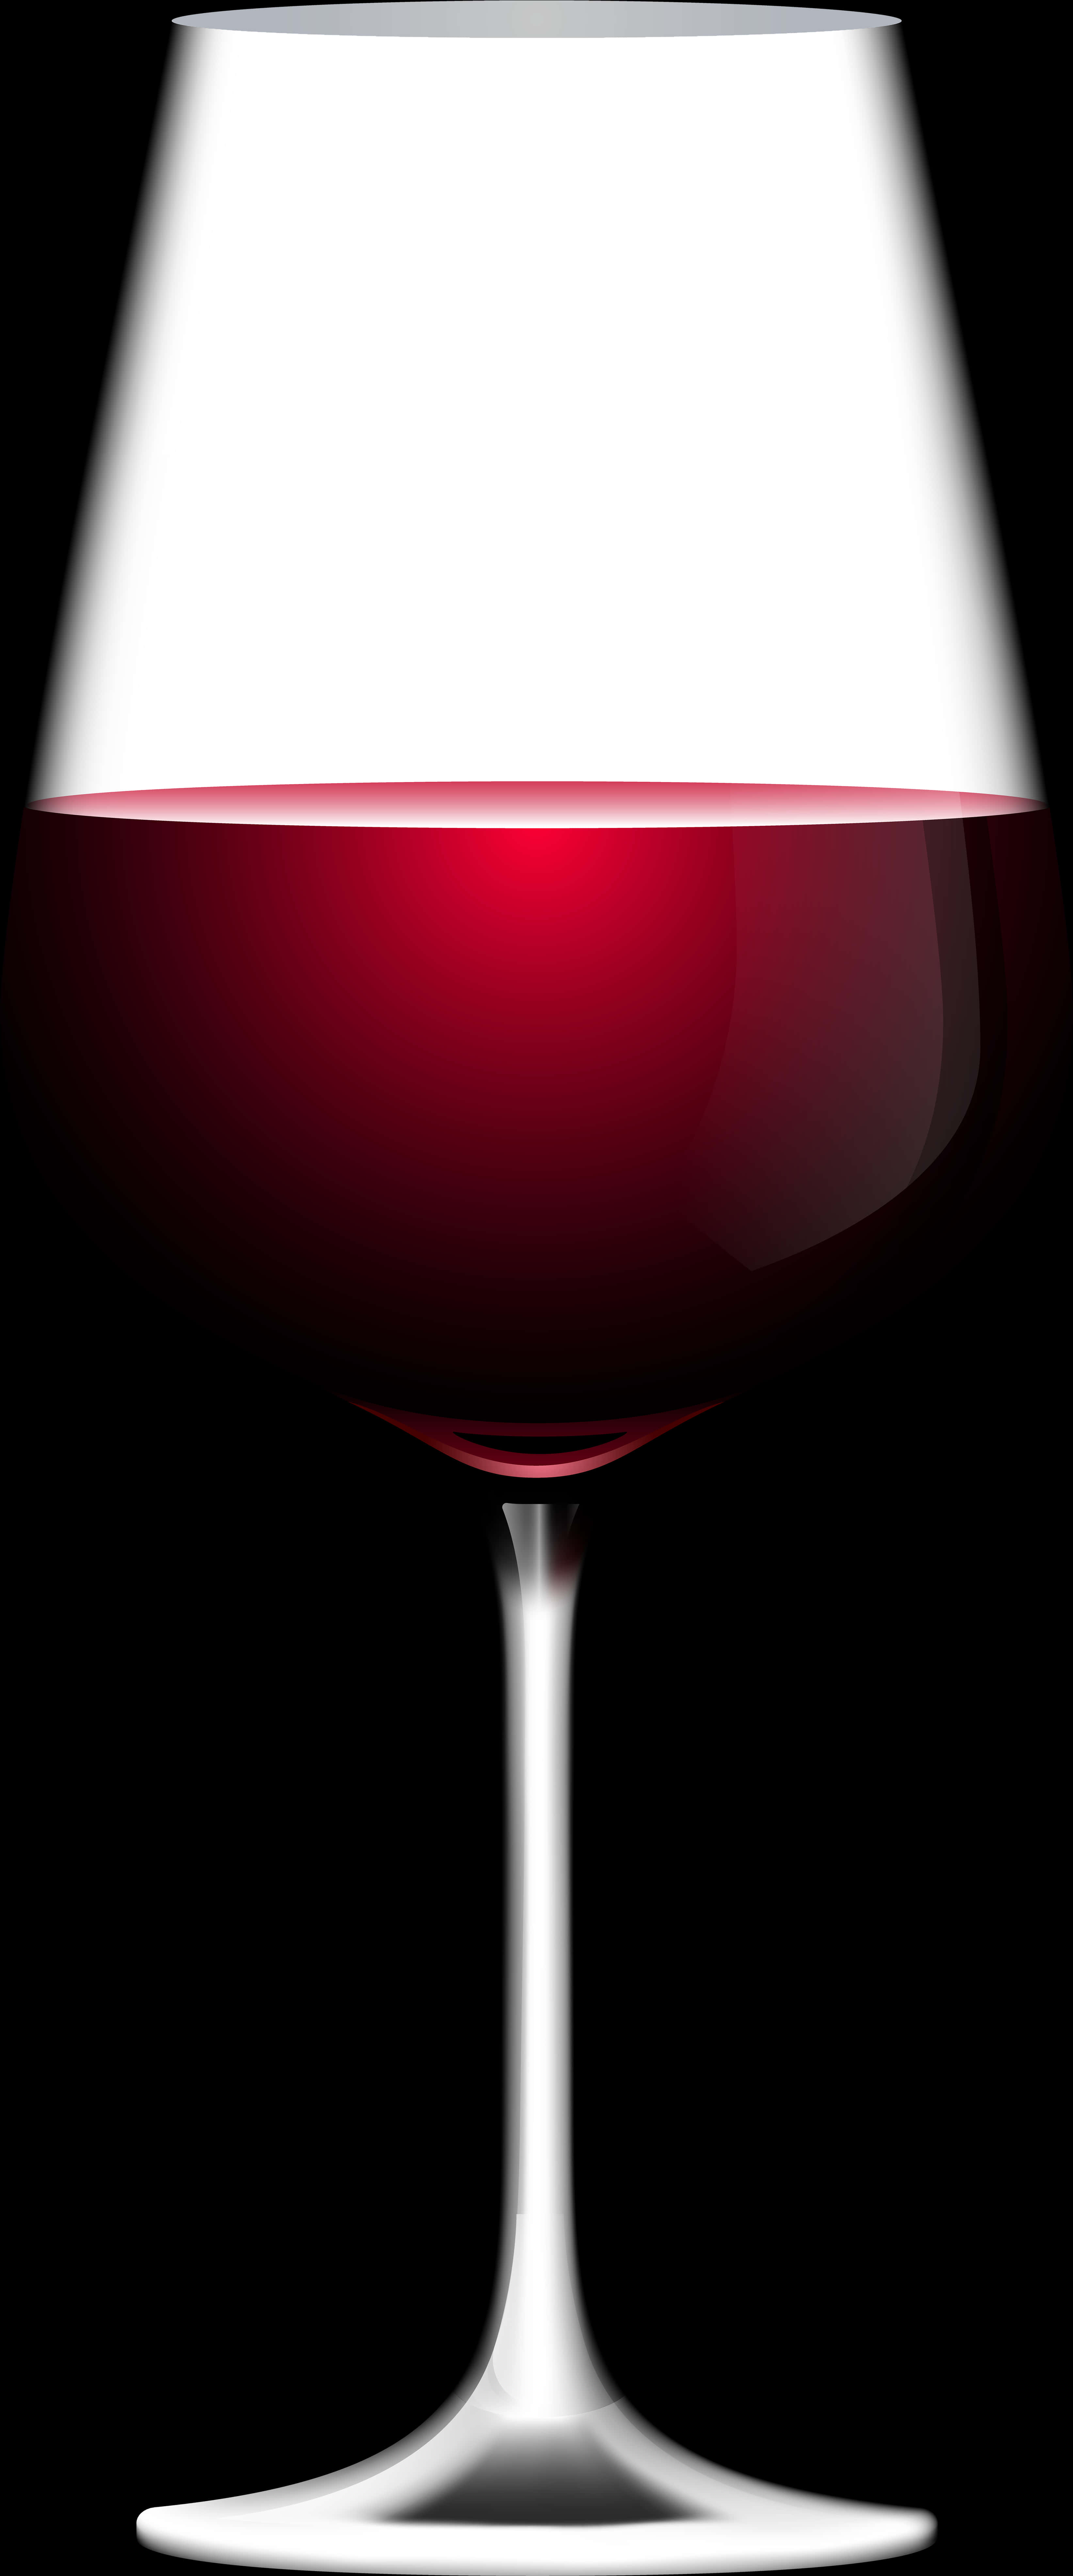 Half Red Wine Glass